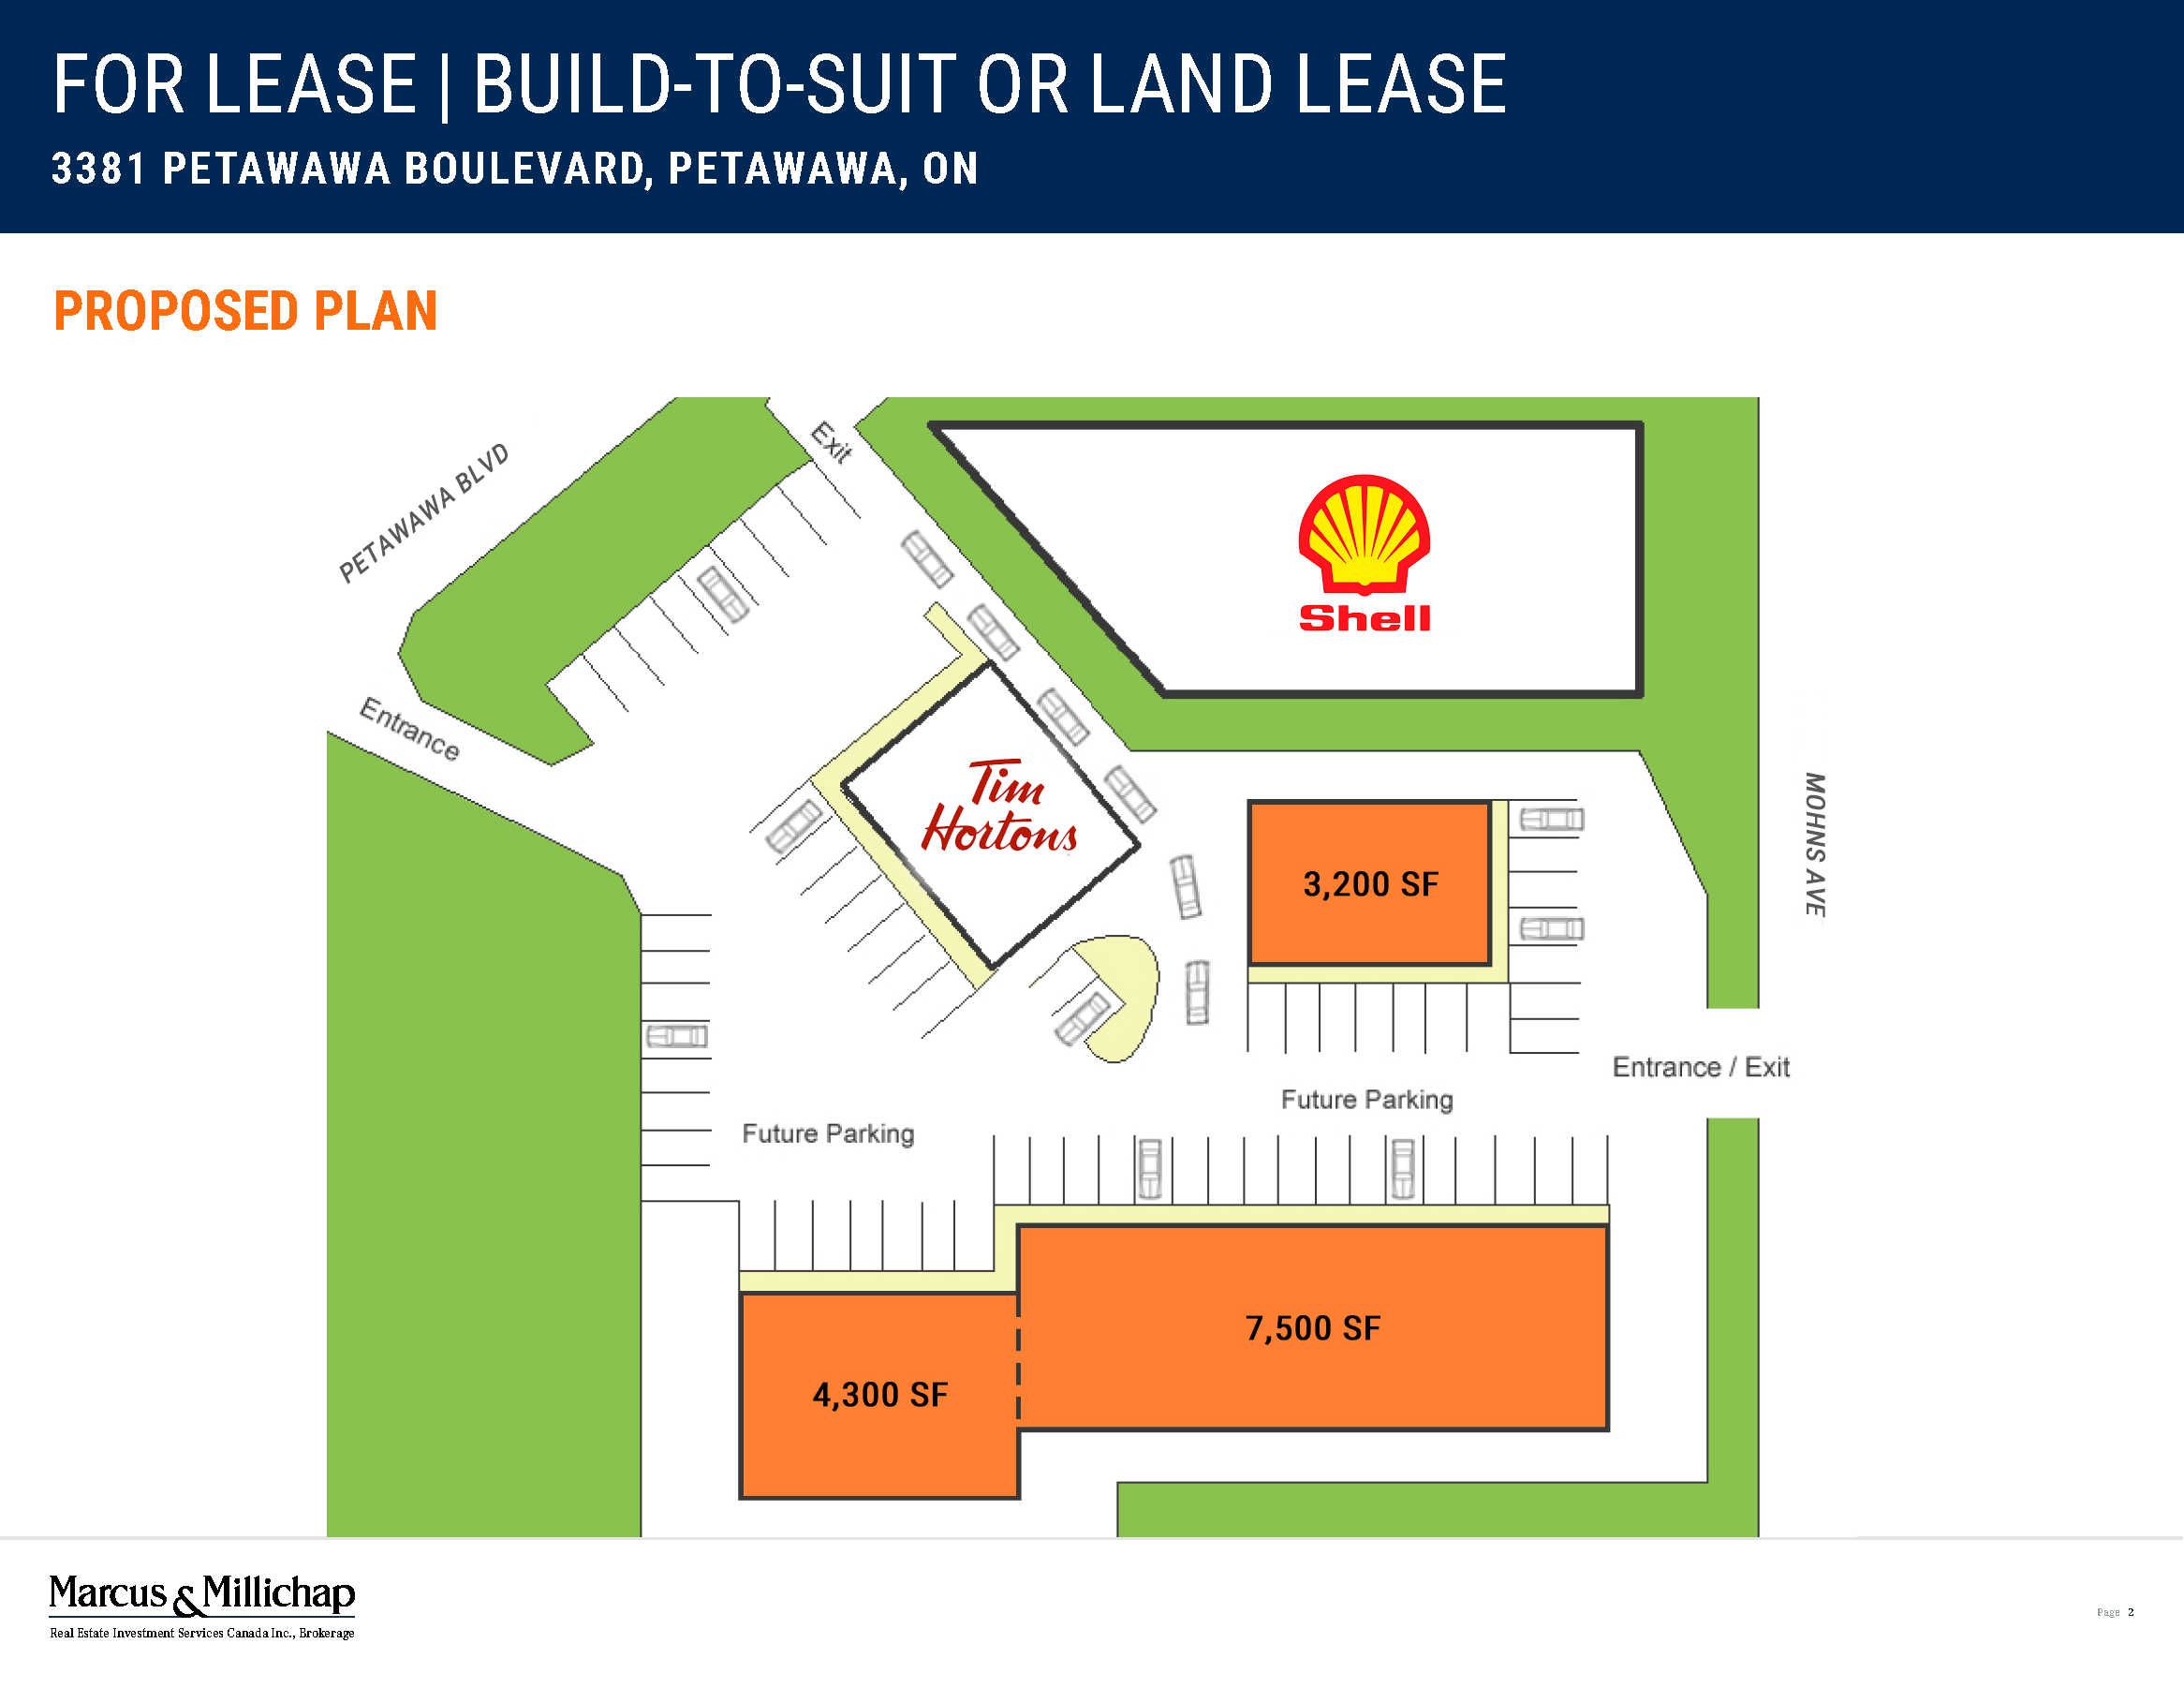 An image of the 3381 Petawawa Blvd. proposed plan